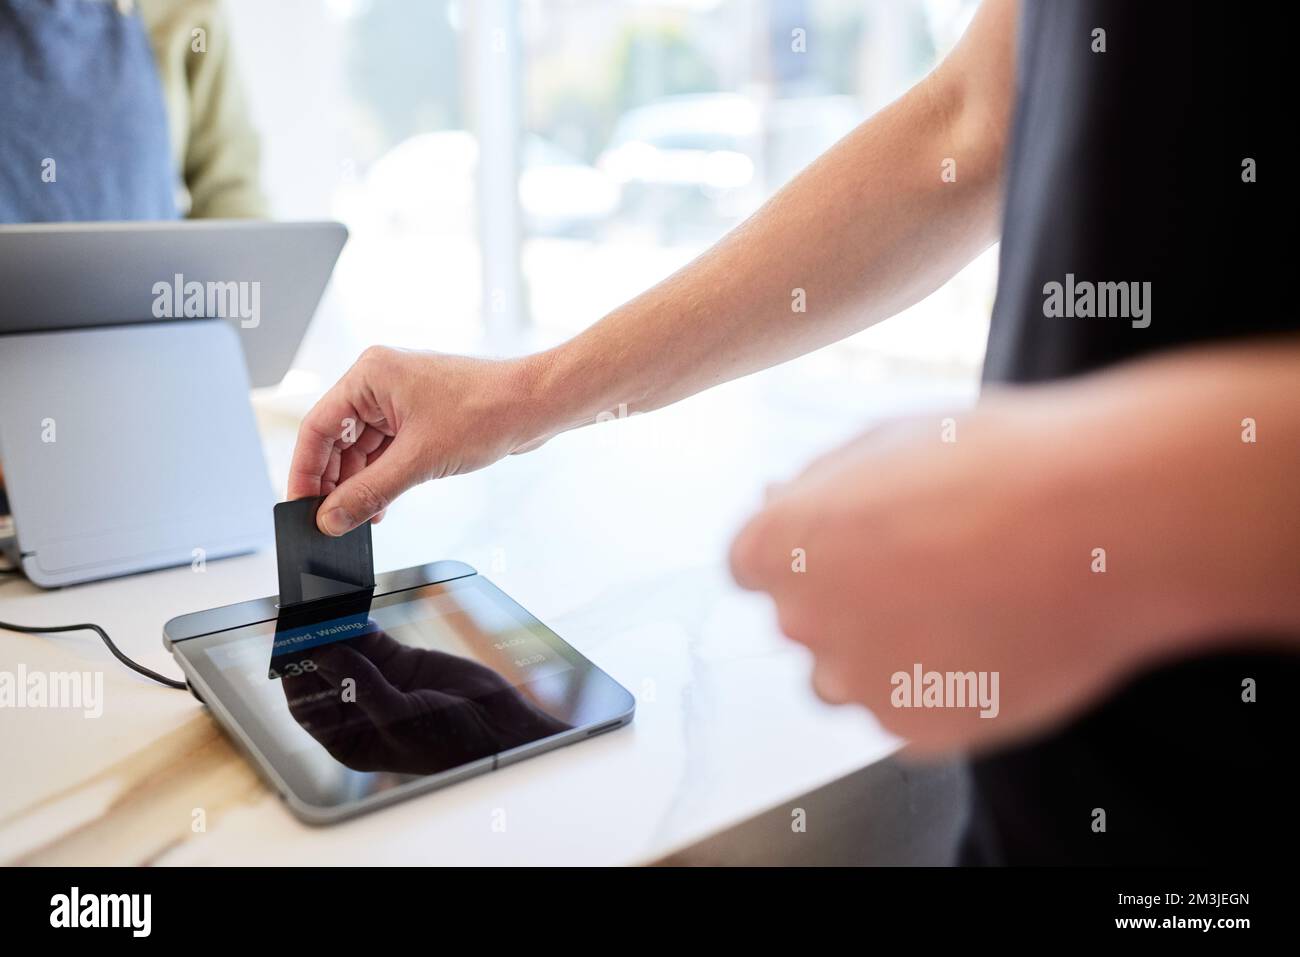 Un client de sexe masculin insère une carte de crédit dans le système POS du café Banque D'Images